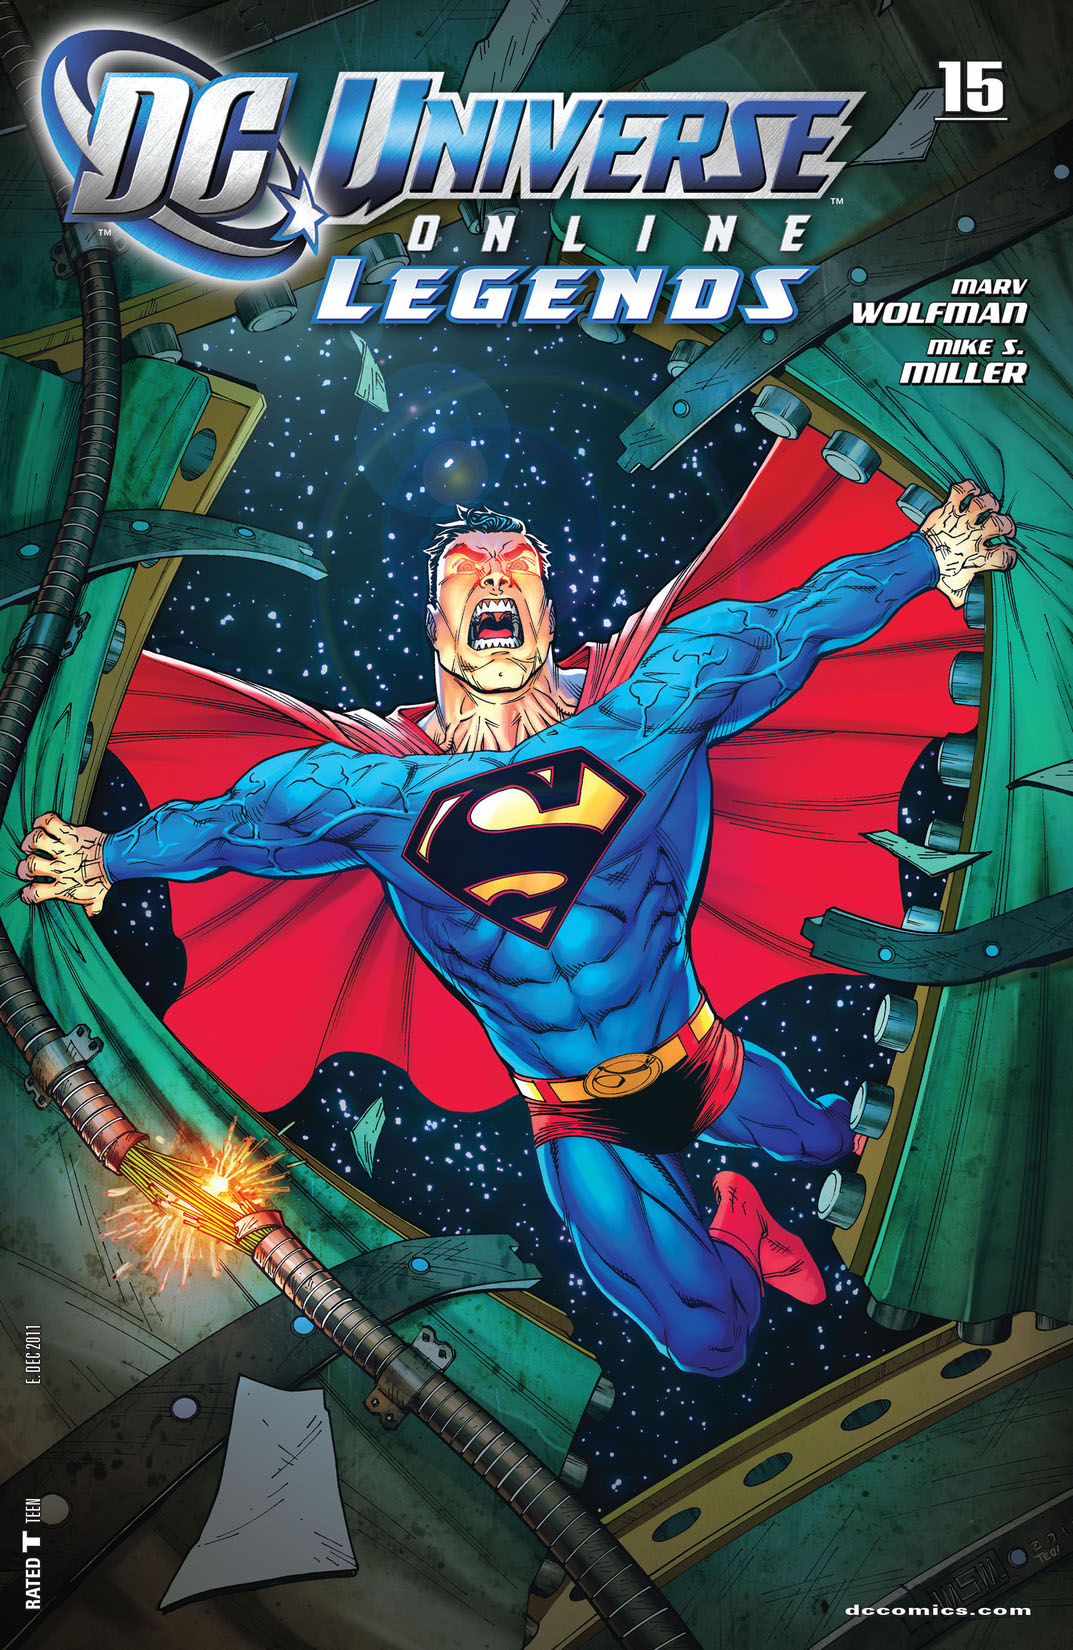 DC Universe Online Legends #15 preview images